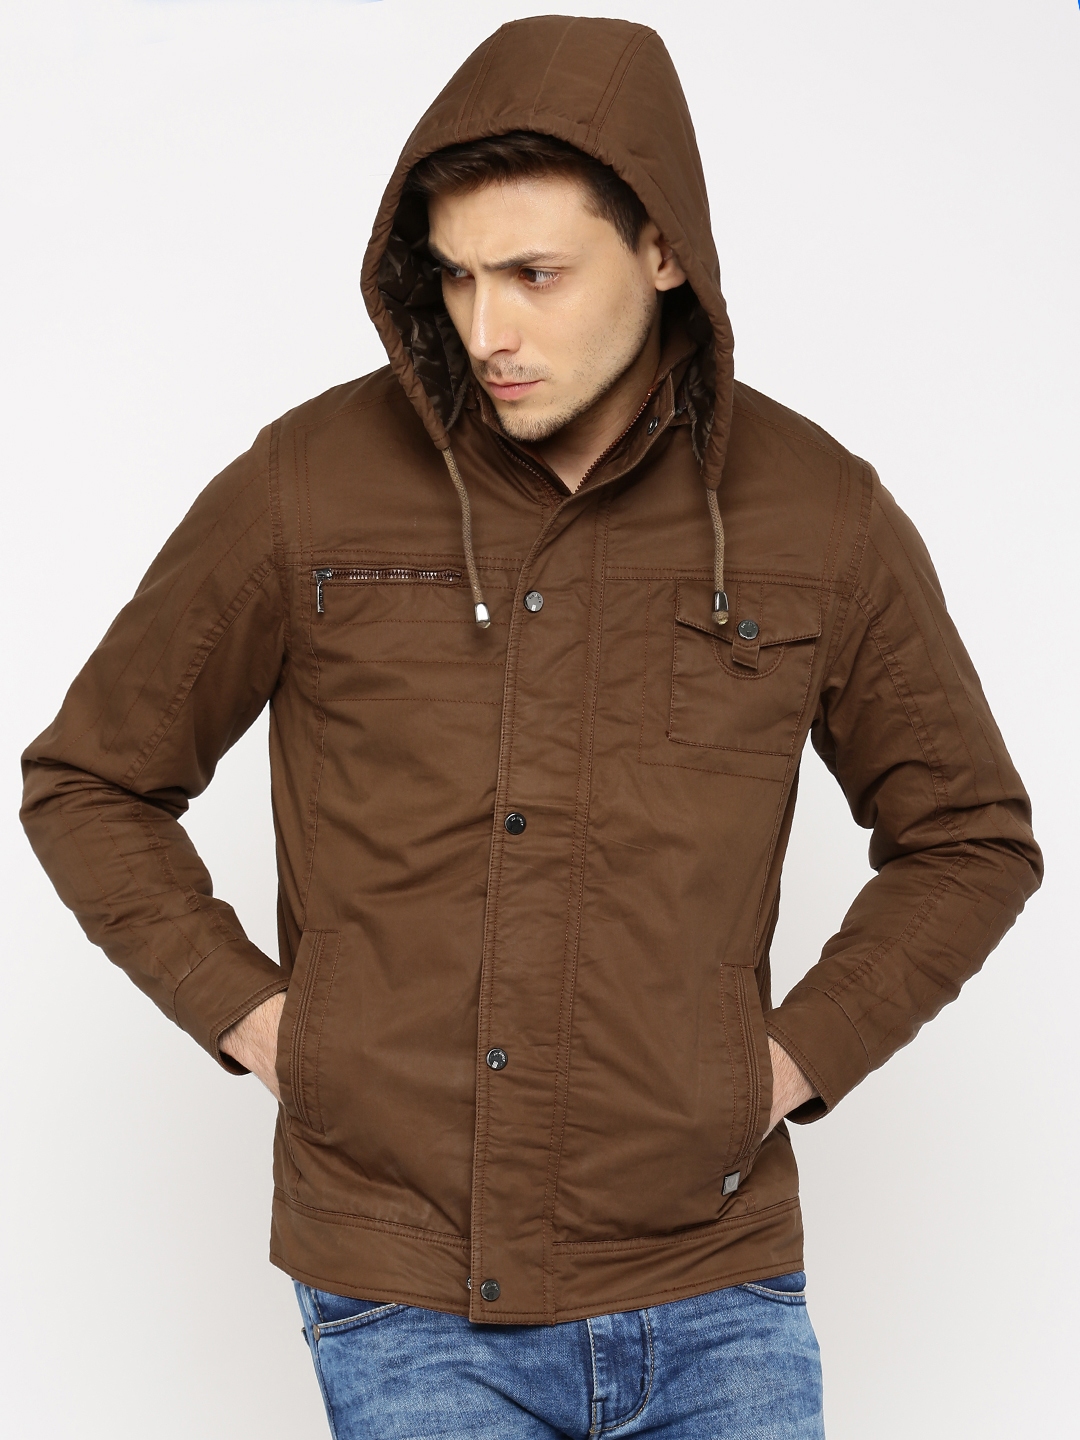 Buy Van Heusen Brown Jacket With Detachable Hood - Jackets for Men ...